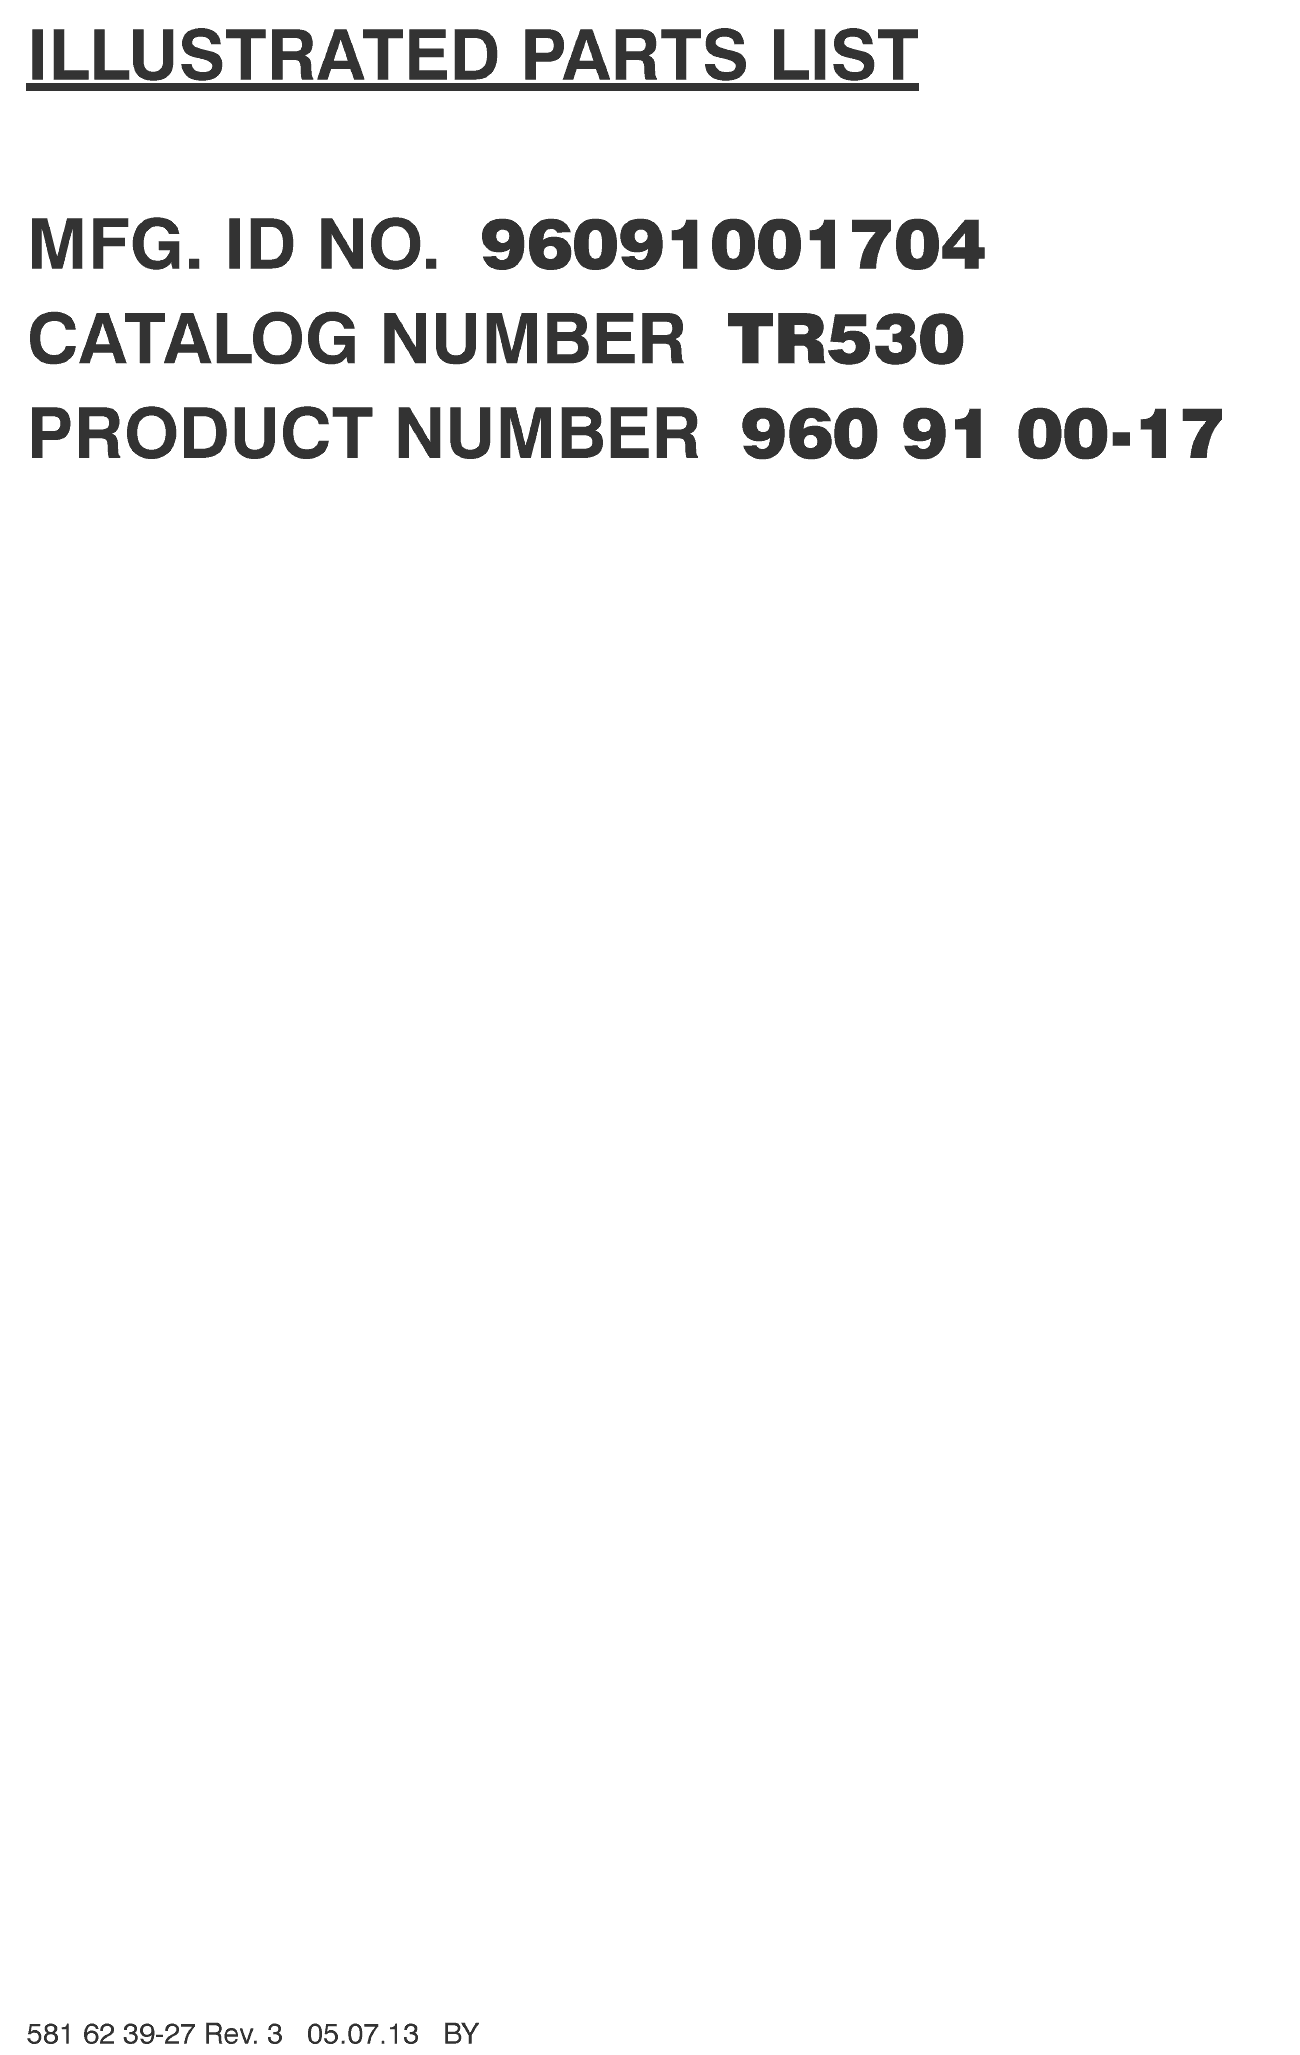 Культиватор TR530 (2013-11) (PNC 96091001704)